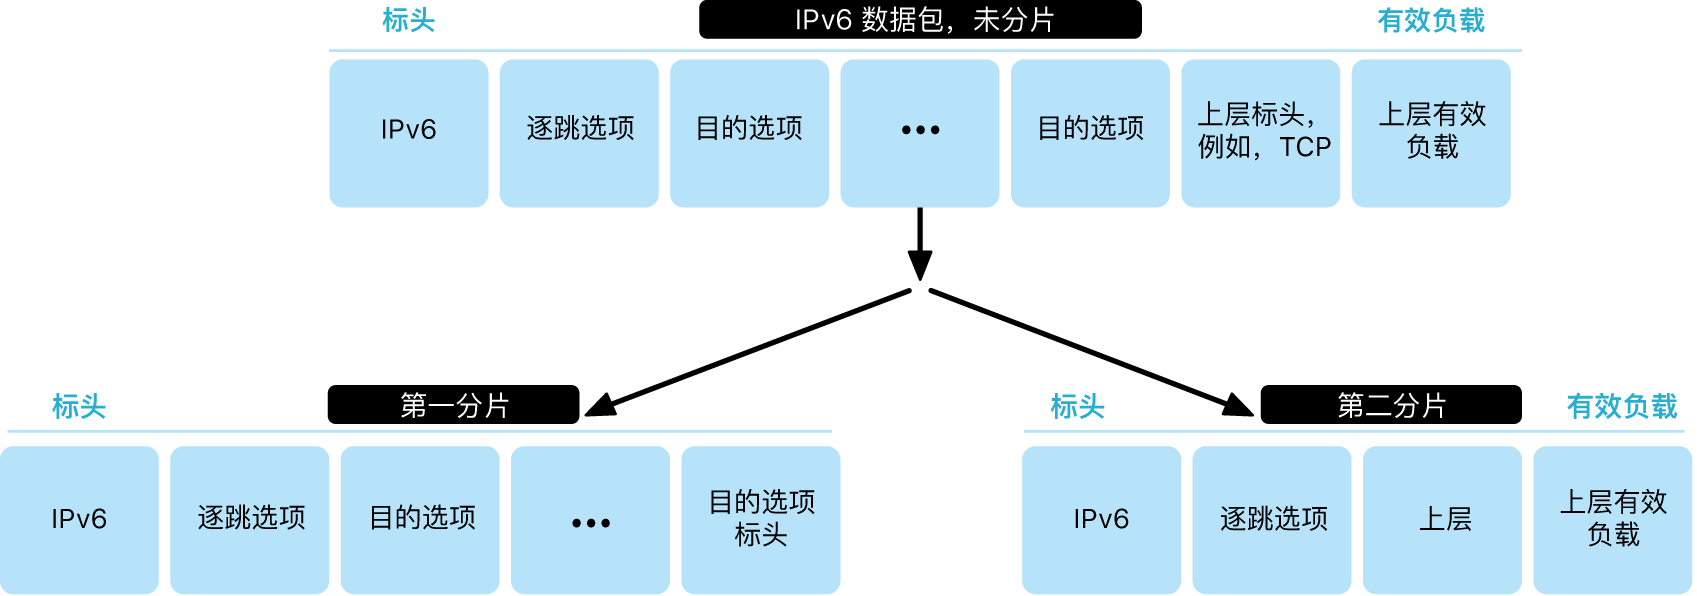 示意图显示有两层的 IPv6 数据包：上层未分段，下层已分段。